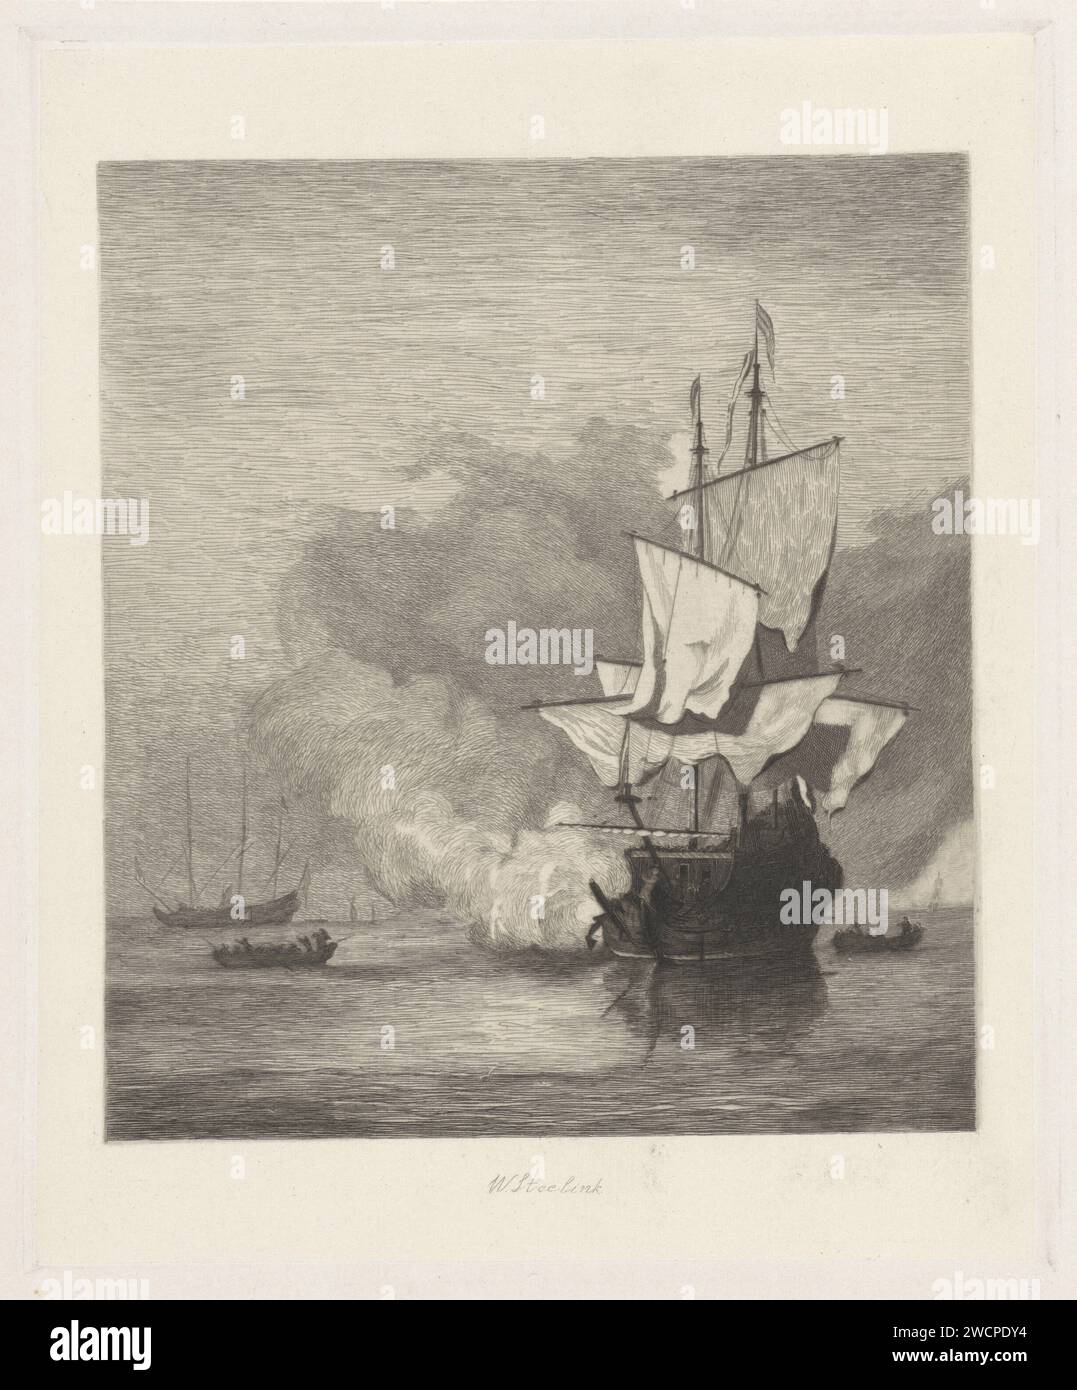 Het Kanonschot, Willem Steelink (I), nach Willem van de Velde (II), 1866–1890 drucken die Kanonenschüsse. Ein Kriegsschiff in Windstille mit schwachen Segeln löst einen Kanonenschuss auf. Zwei Slops auf beiden Seiten, ein weiteres Kriegsschiff in der Ferne, mit gebügelten Segeln. Papier. Ätzung Segelschiff, Segelboot. Kanonenschüsse (Militärsalute) Stockfoto